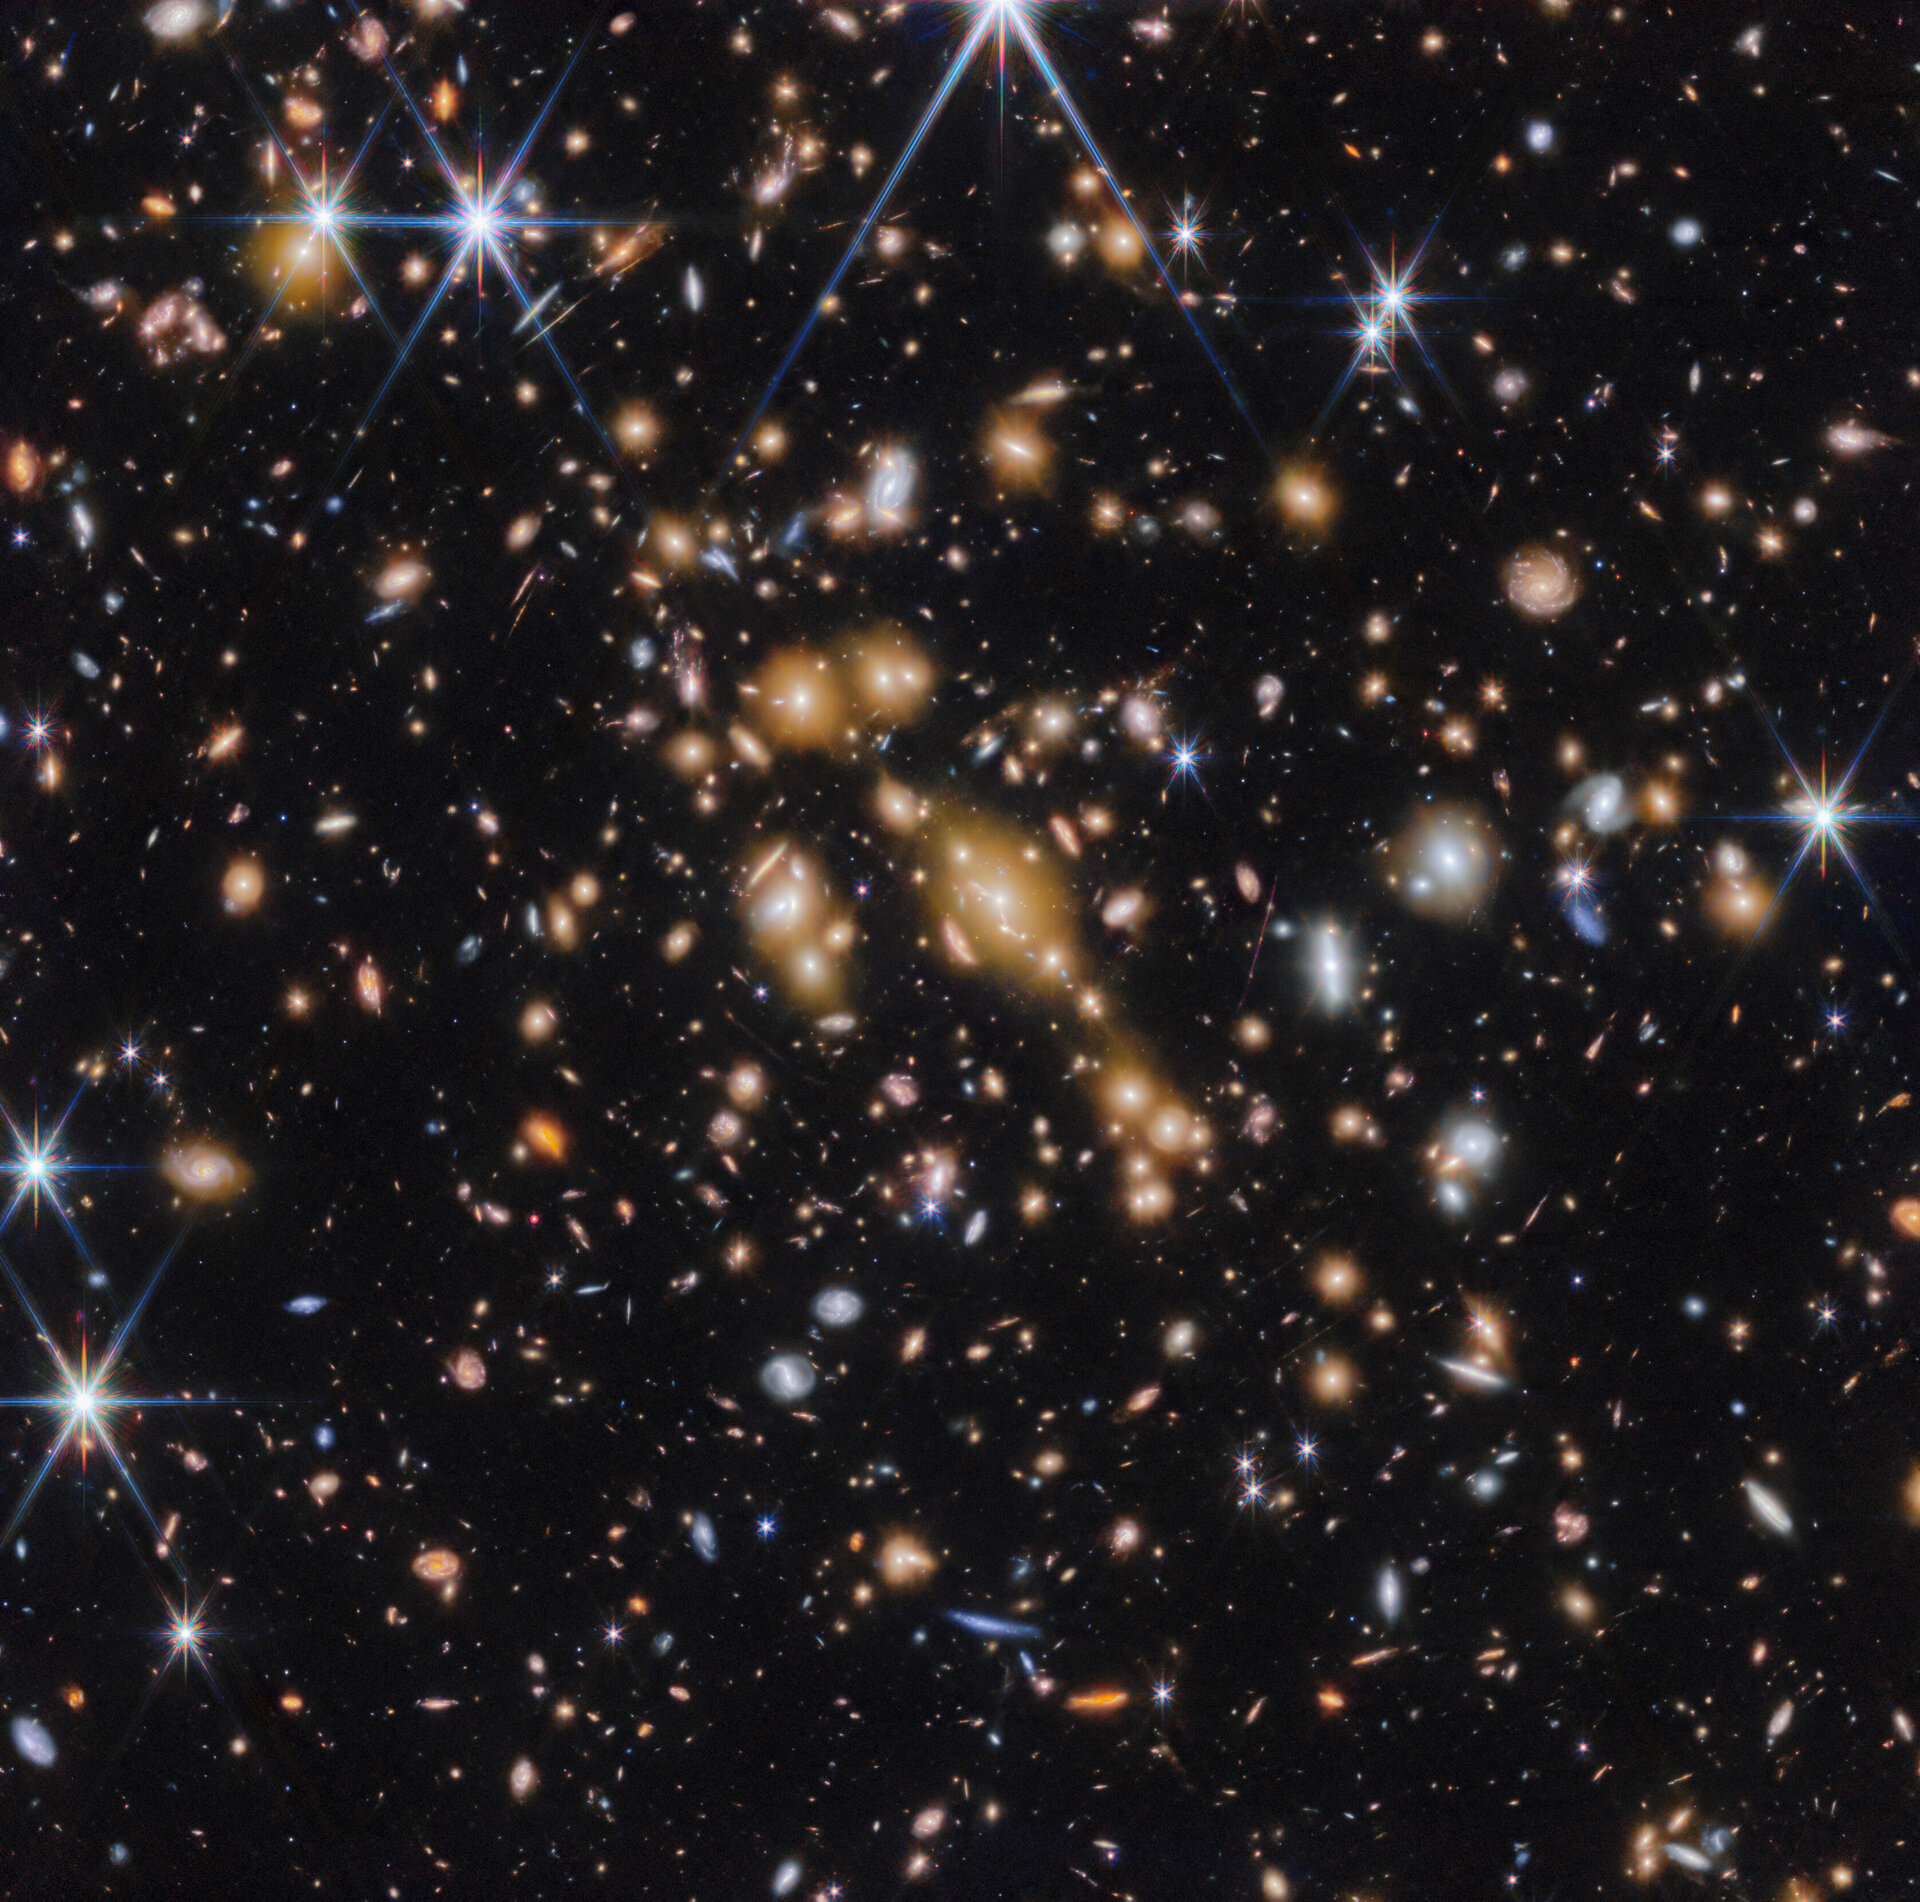 Το διαστημικό τηλεσκόπιο James Webb ανιχνεύει “κοσμικούς πολύτιμους λίθους” στο πολύ πρώιμο σύμπαν (βίντεο)